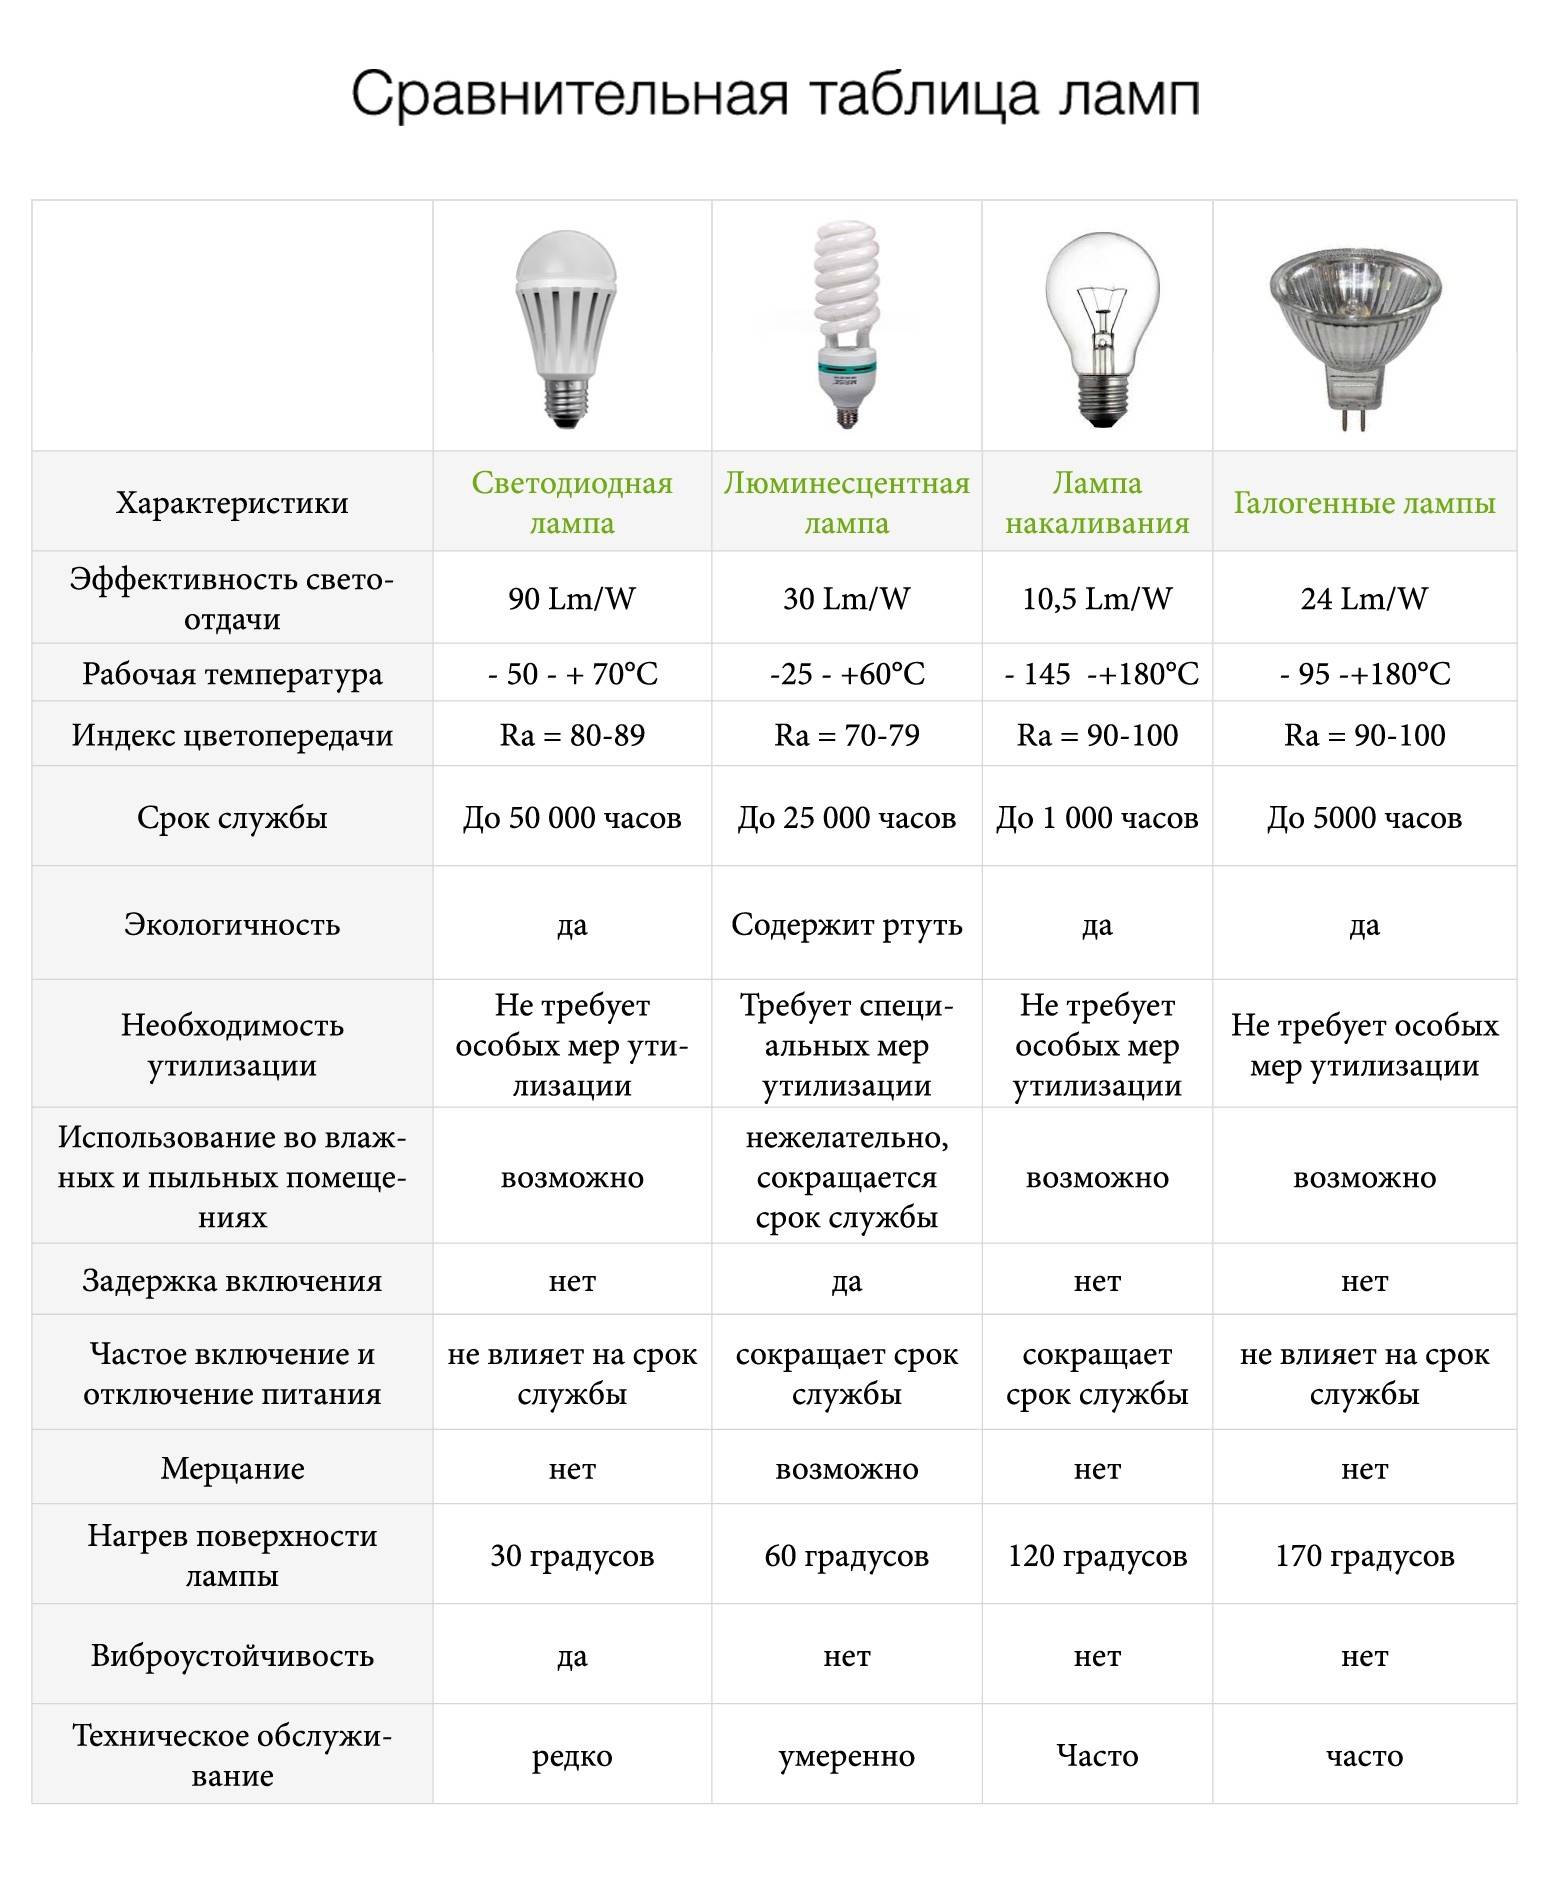 Сравнение энергосберегающих ламп, ламп накаливание и светодиодных ламп